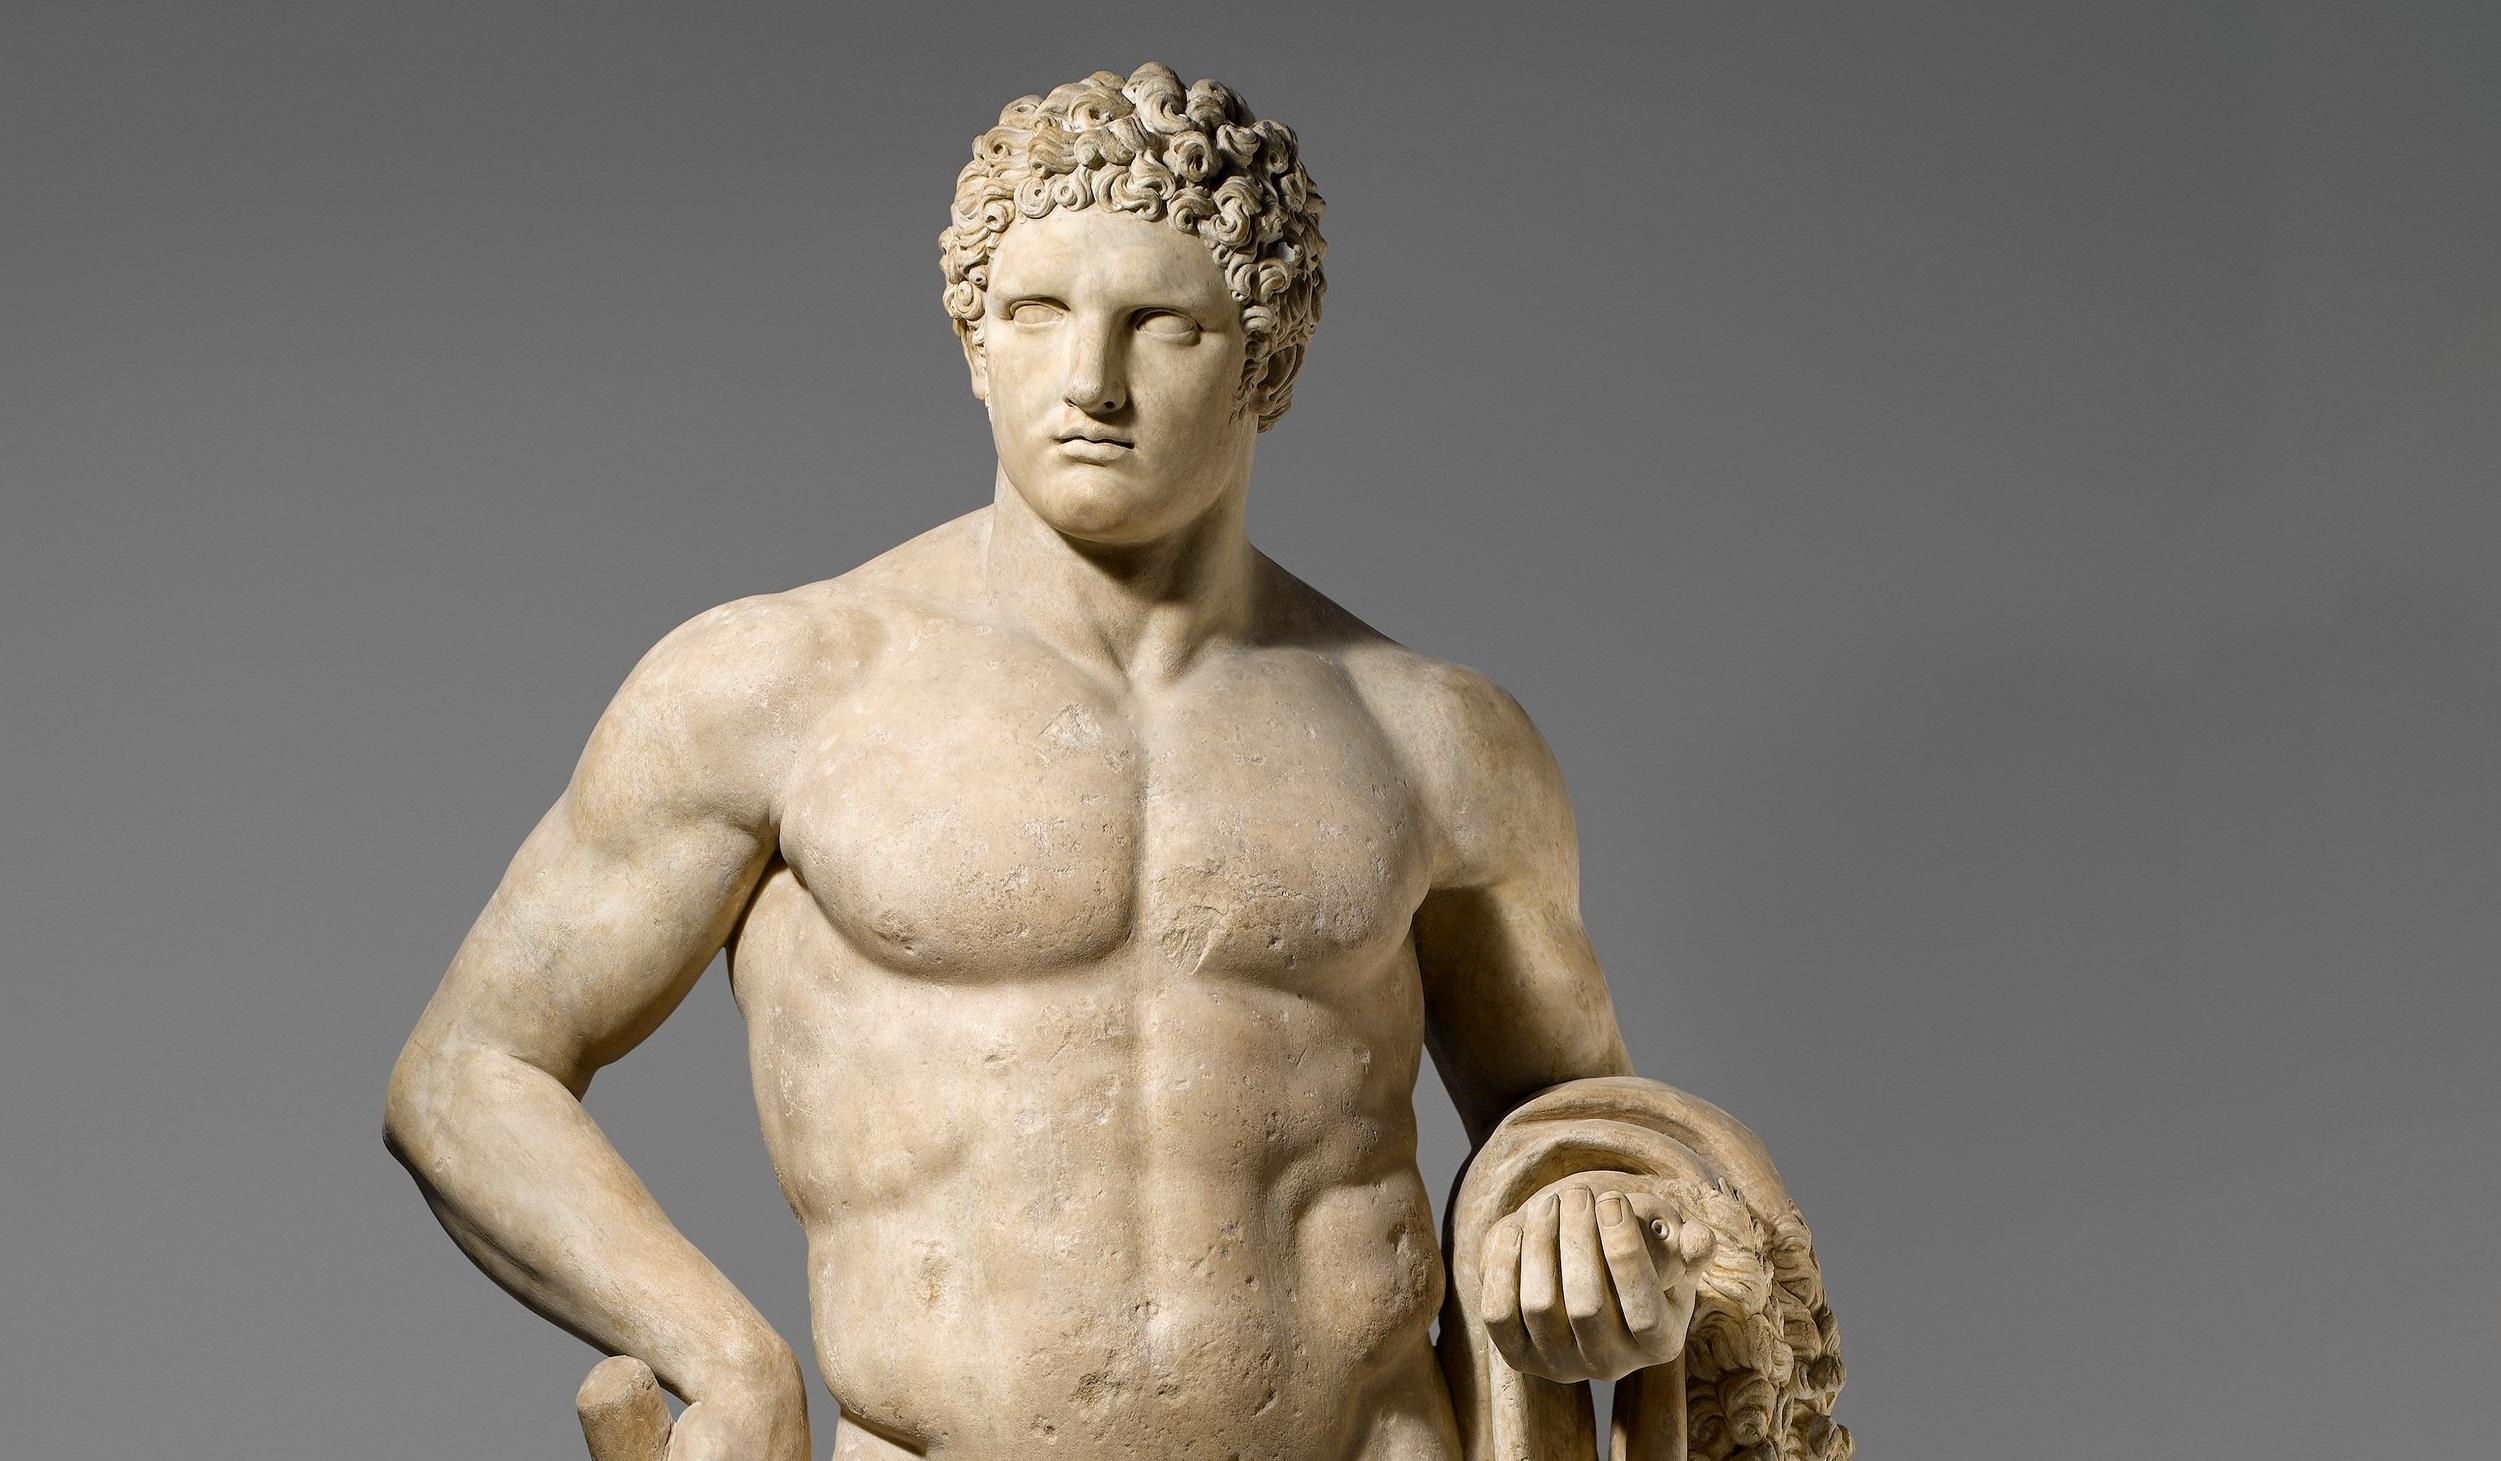 Estatua de Hércules en el Museo de Arte Metropolitano, Nueva York. https://www.metmuseum.org